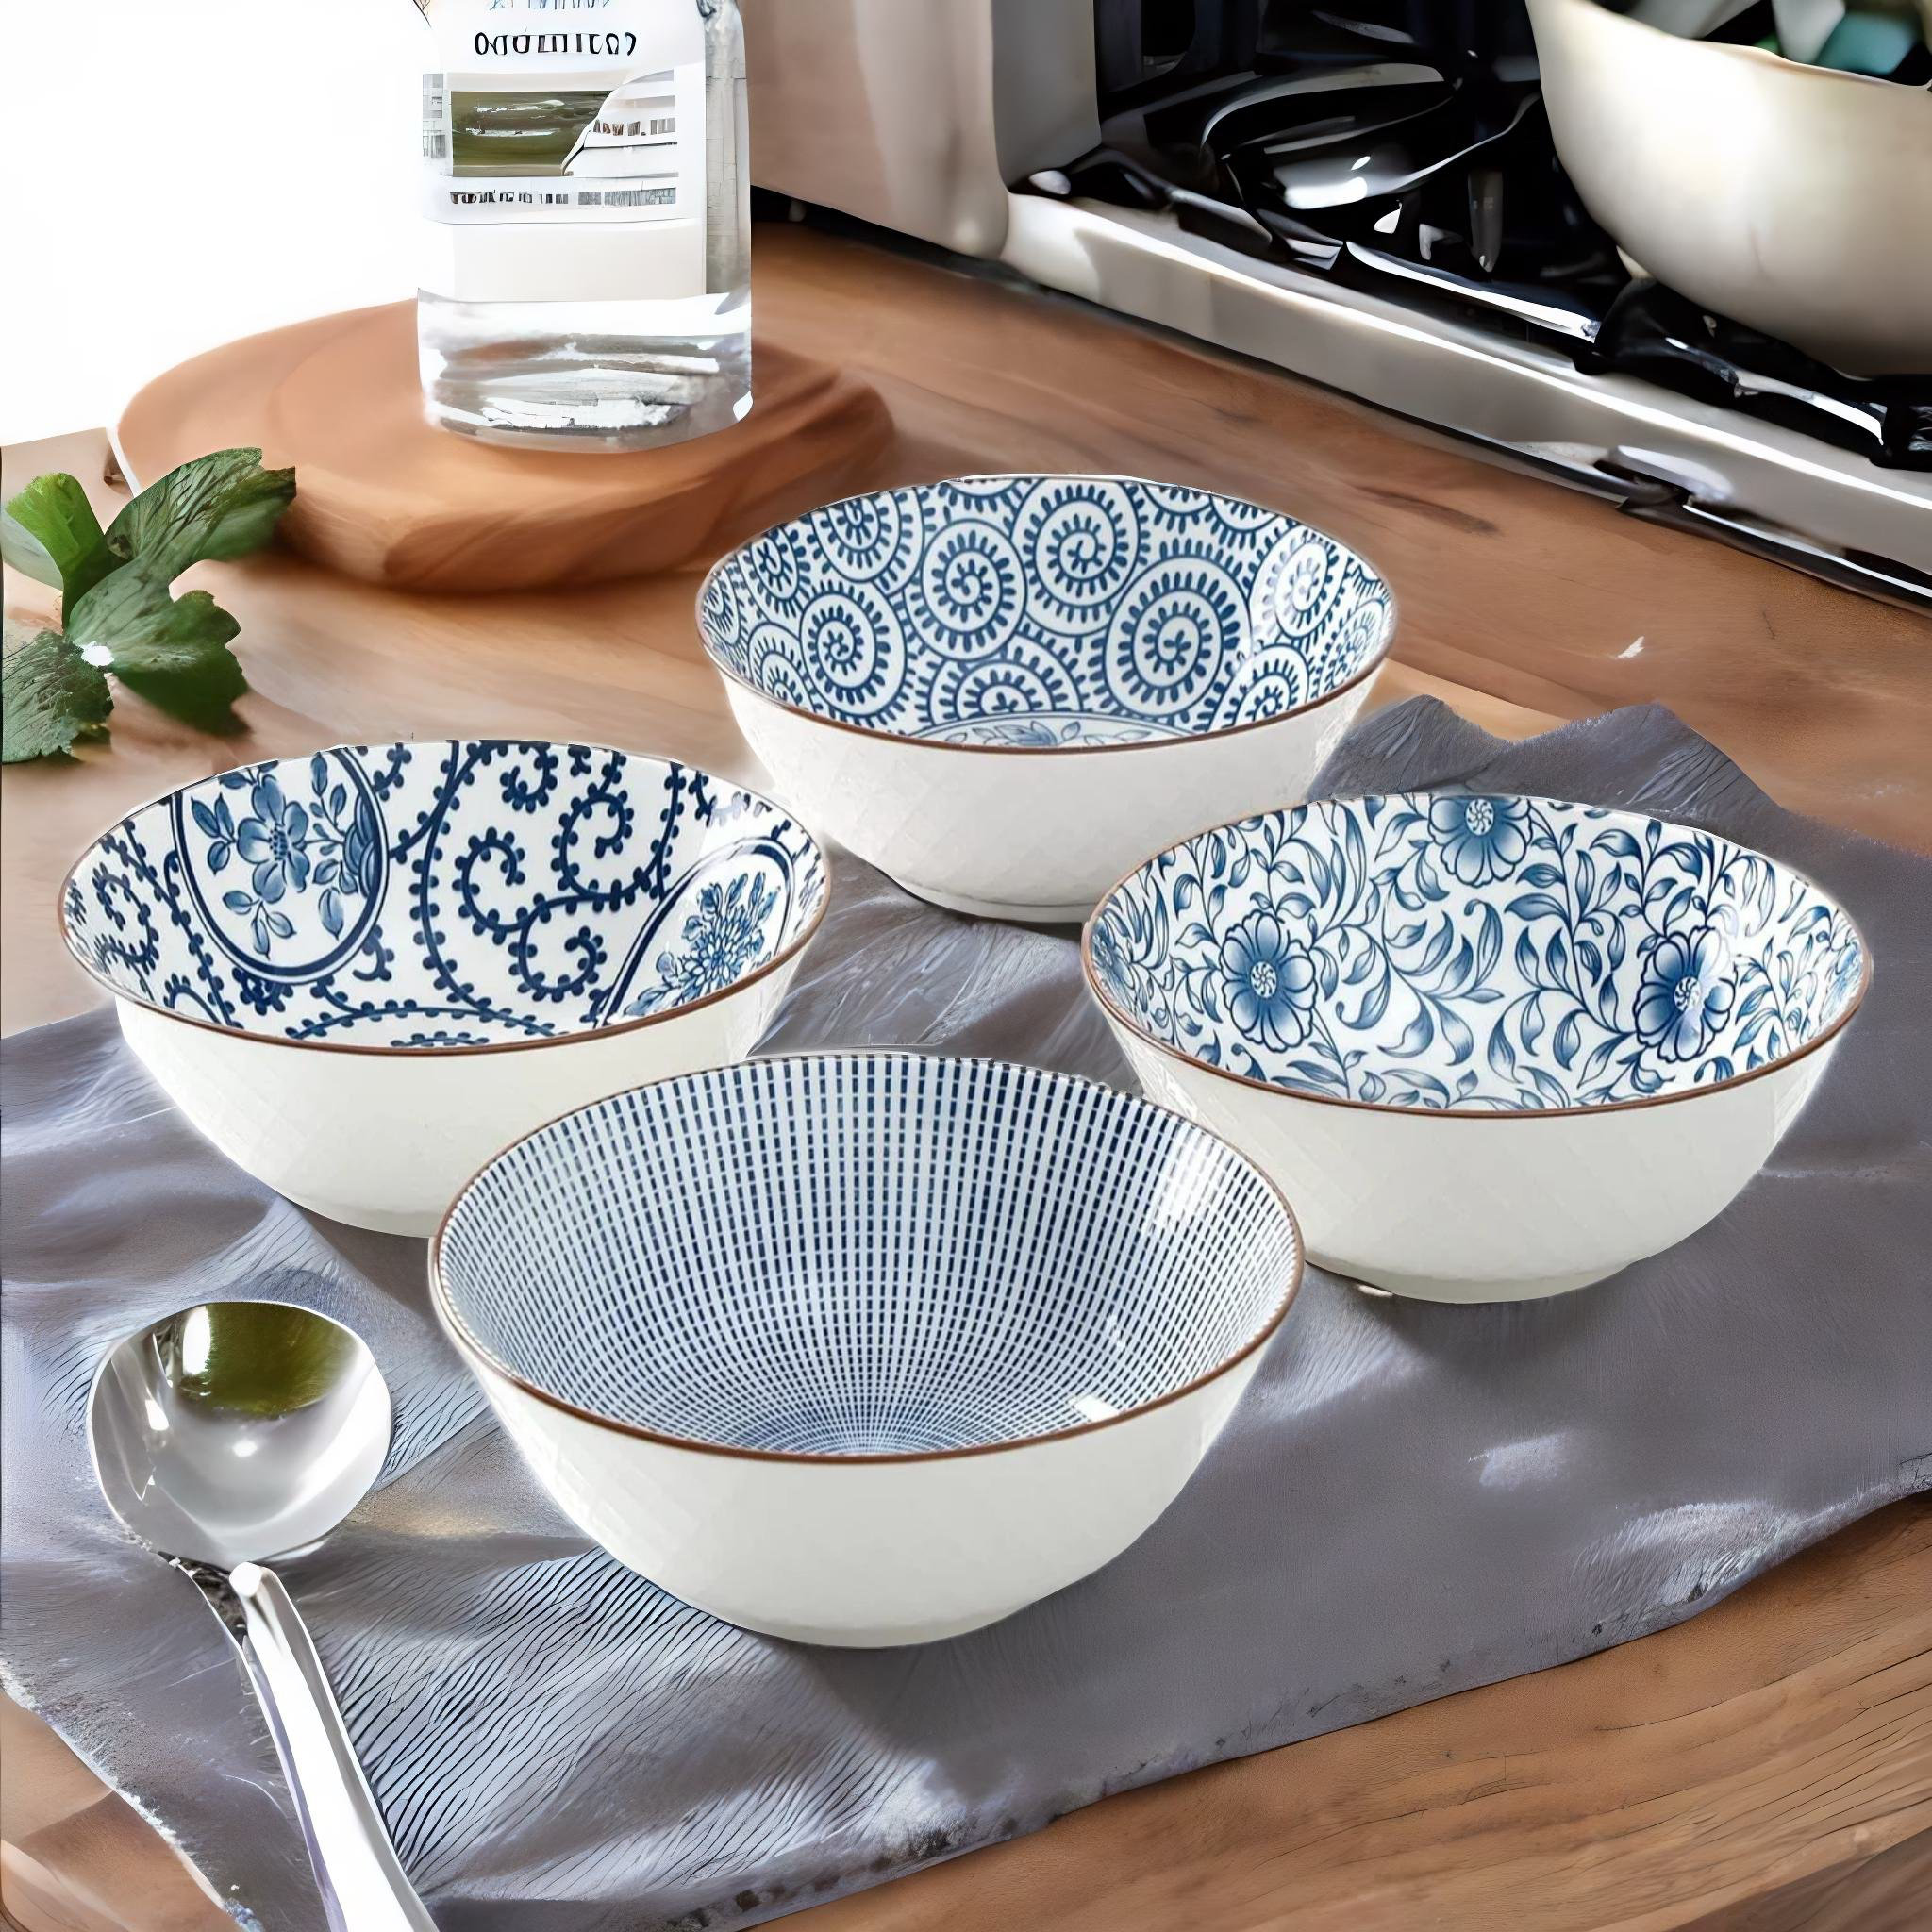 https://assets.wfcdn.com/im/46706834/compr-r85/2446/244687221/mangubai-8-inch-40-ounce-ceramic-bowls-for-kitchen-deep-soup-pho-bowls-blue-white-large-porcelain-salad-bowls-set-for-ramen-pasta-cereal-dessert-stackable-deep-noodle-serving-bowls-set-of-4.jpg